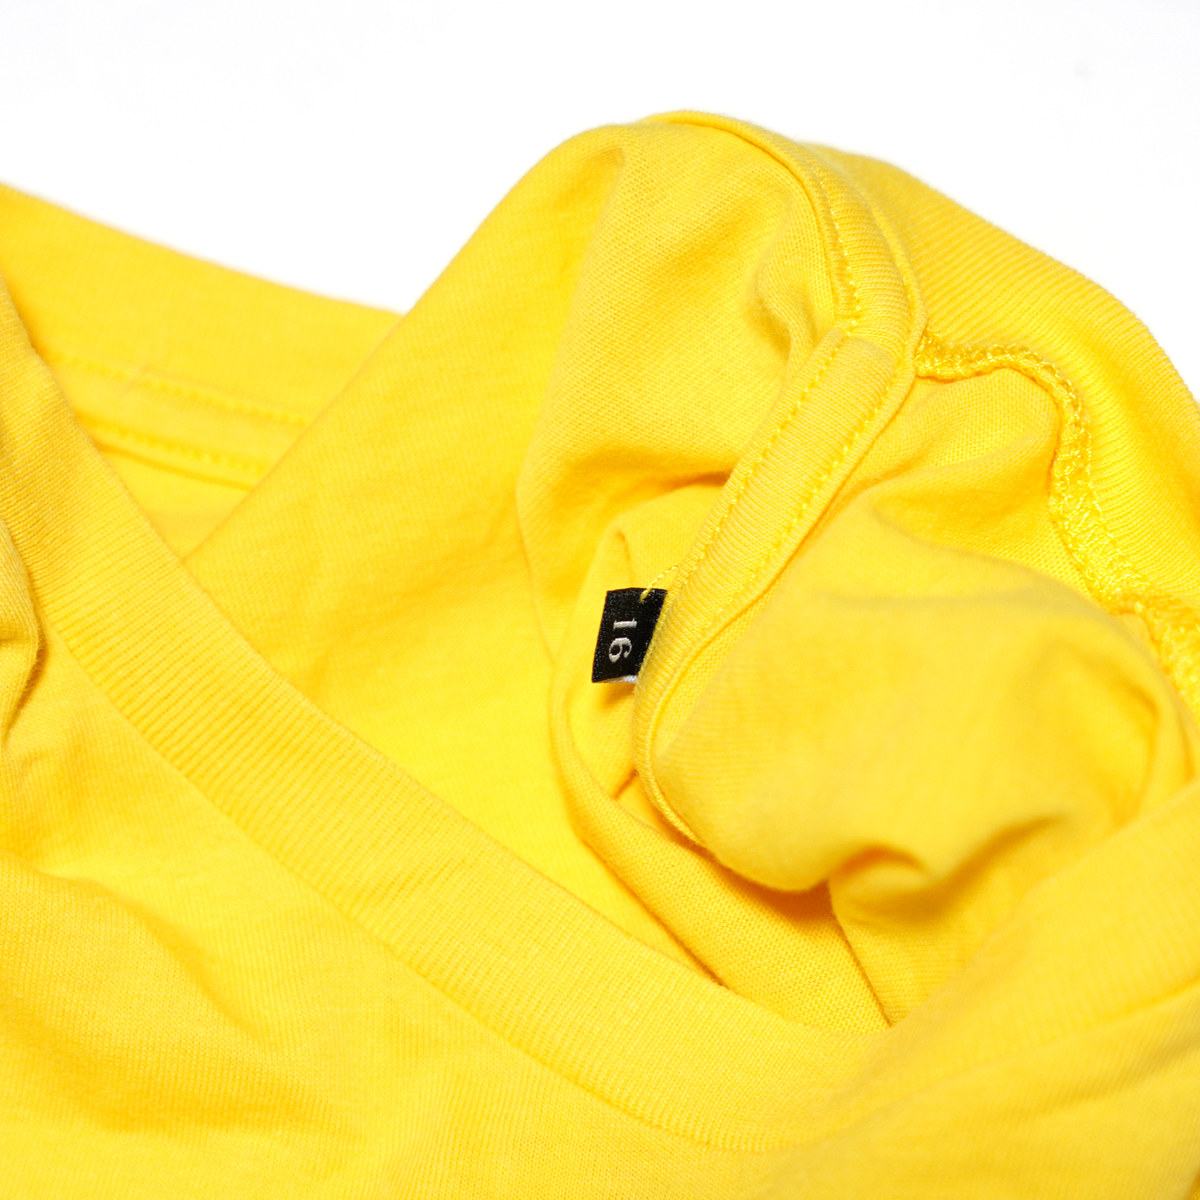 ディーゼル ボックスロゴ イエロー 黄色 半袖 Tシャツ 16 DIESEL_画像3